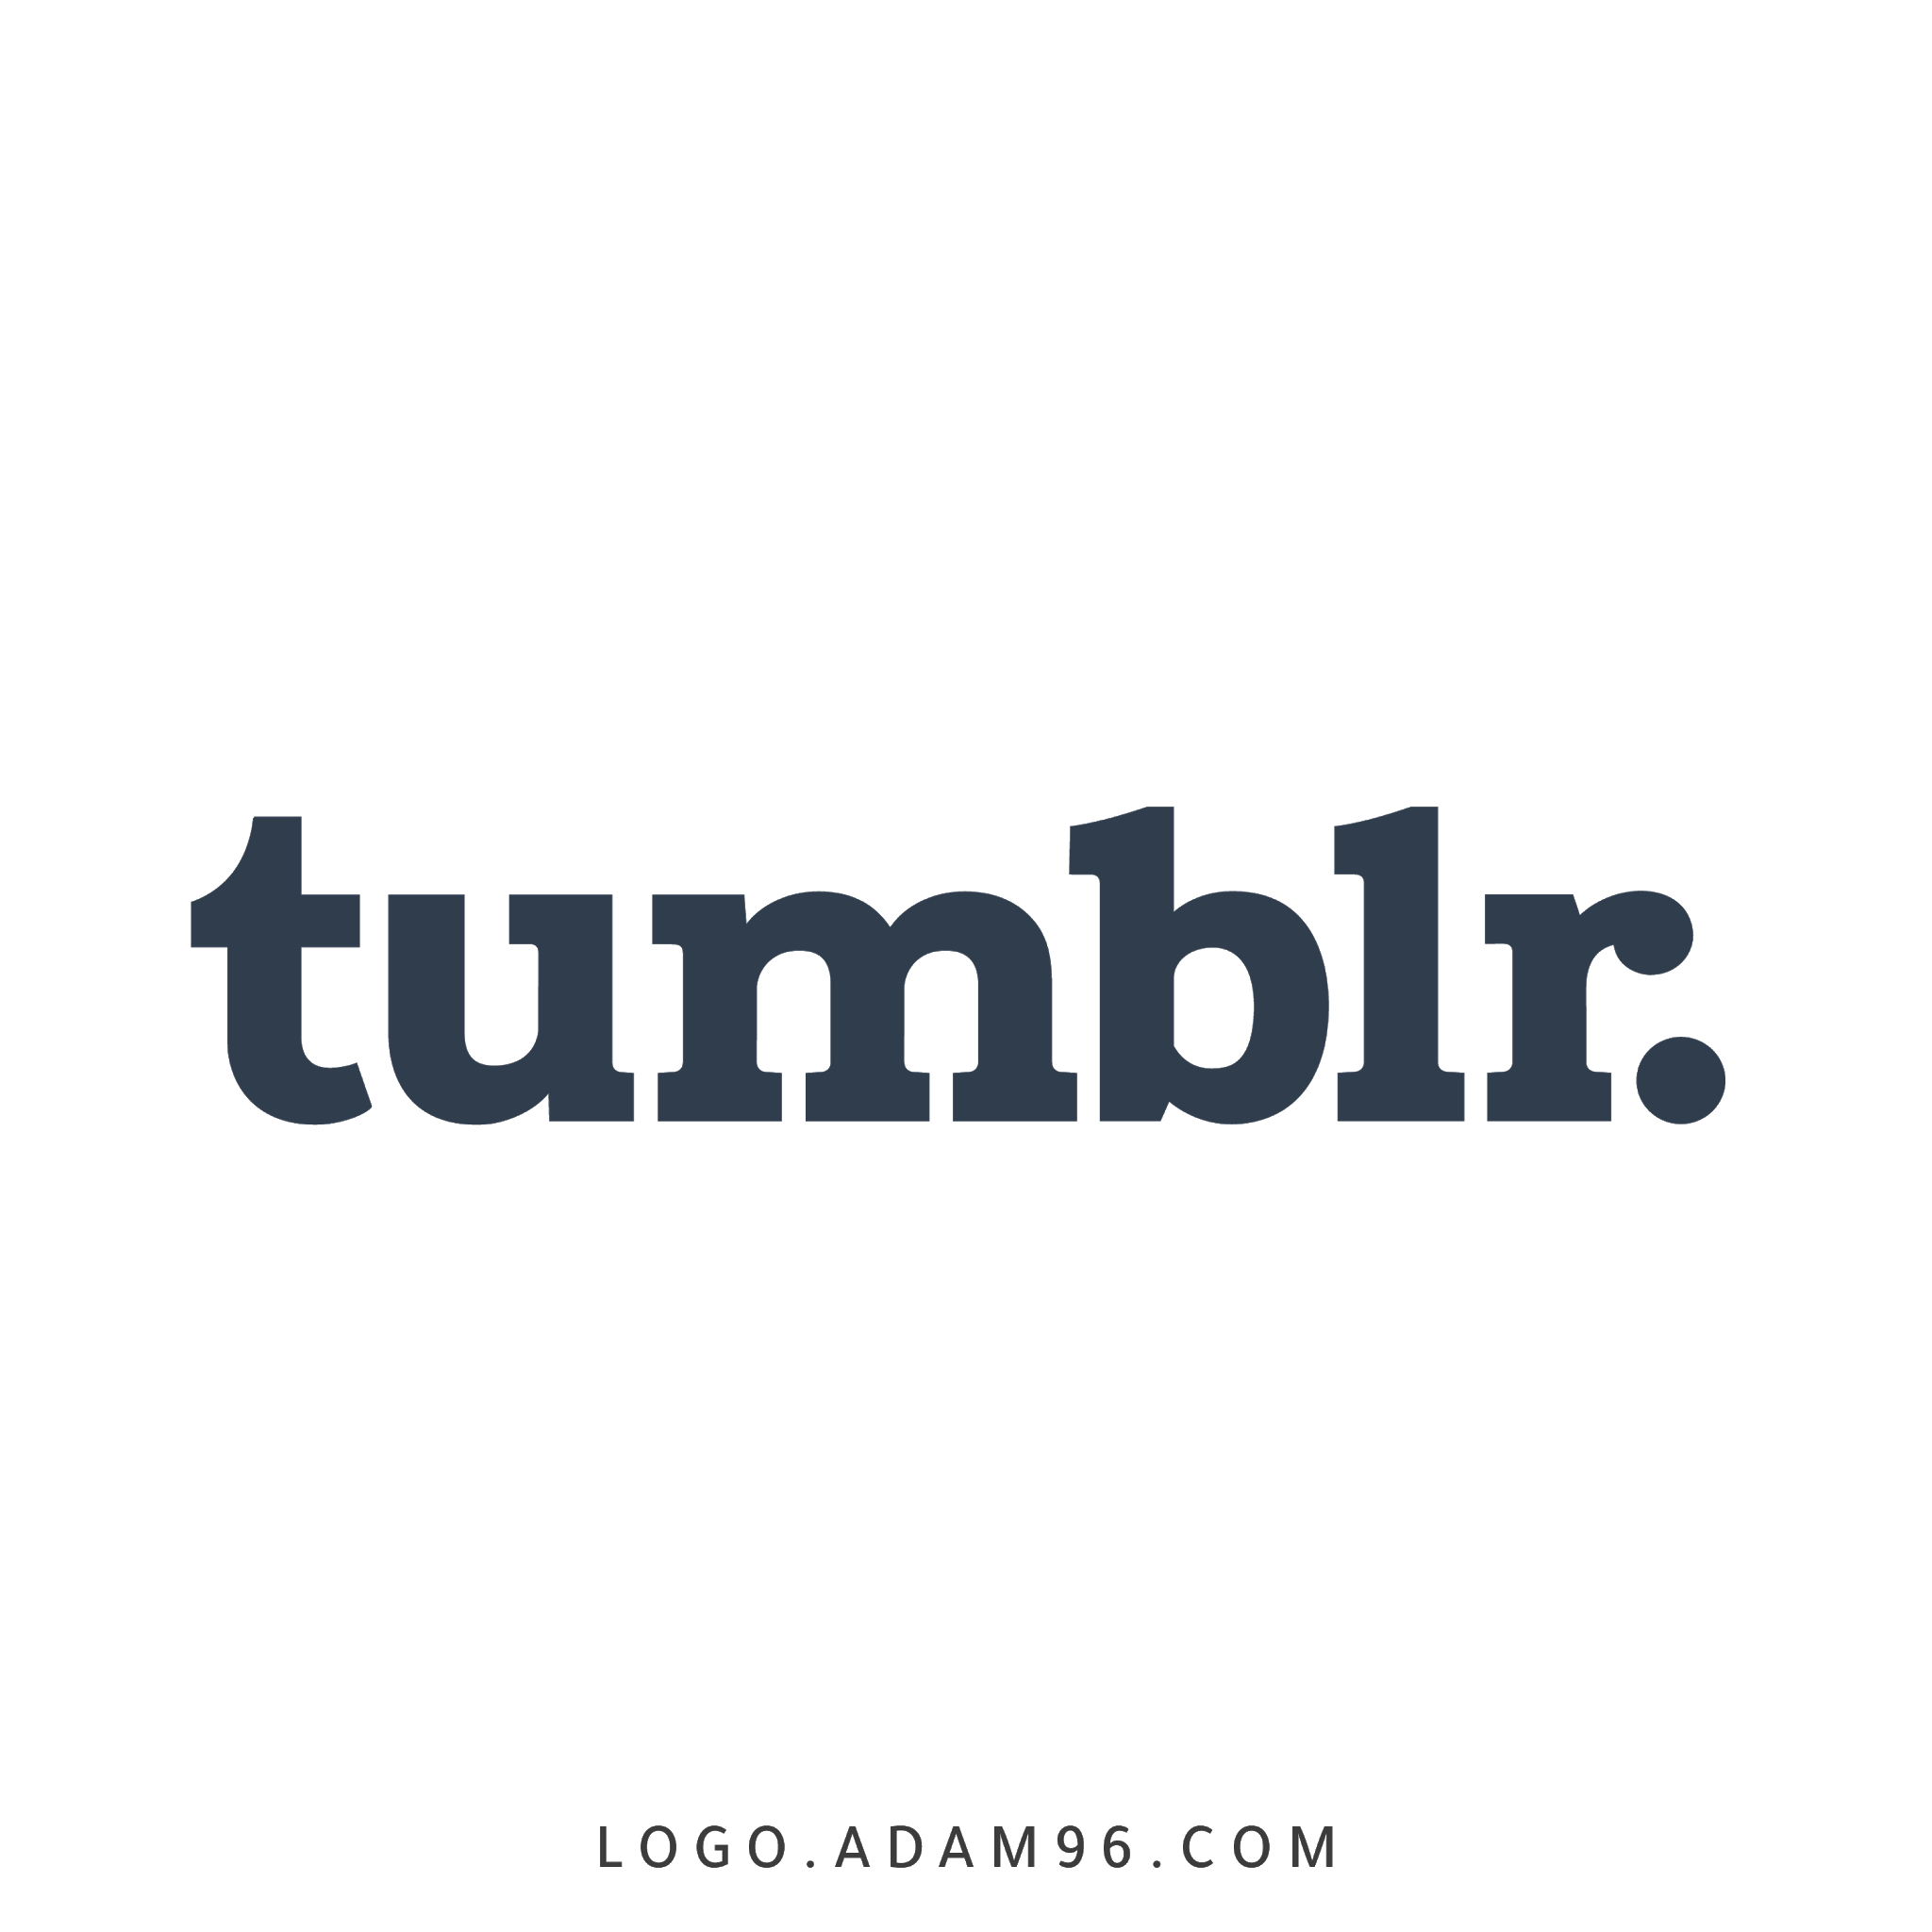 تحميل شعار موقع تمبلر الرسمي لوجو عالي الدقة Logo Tumblr